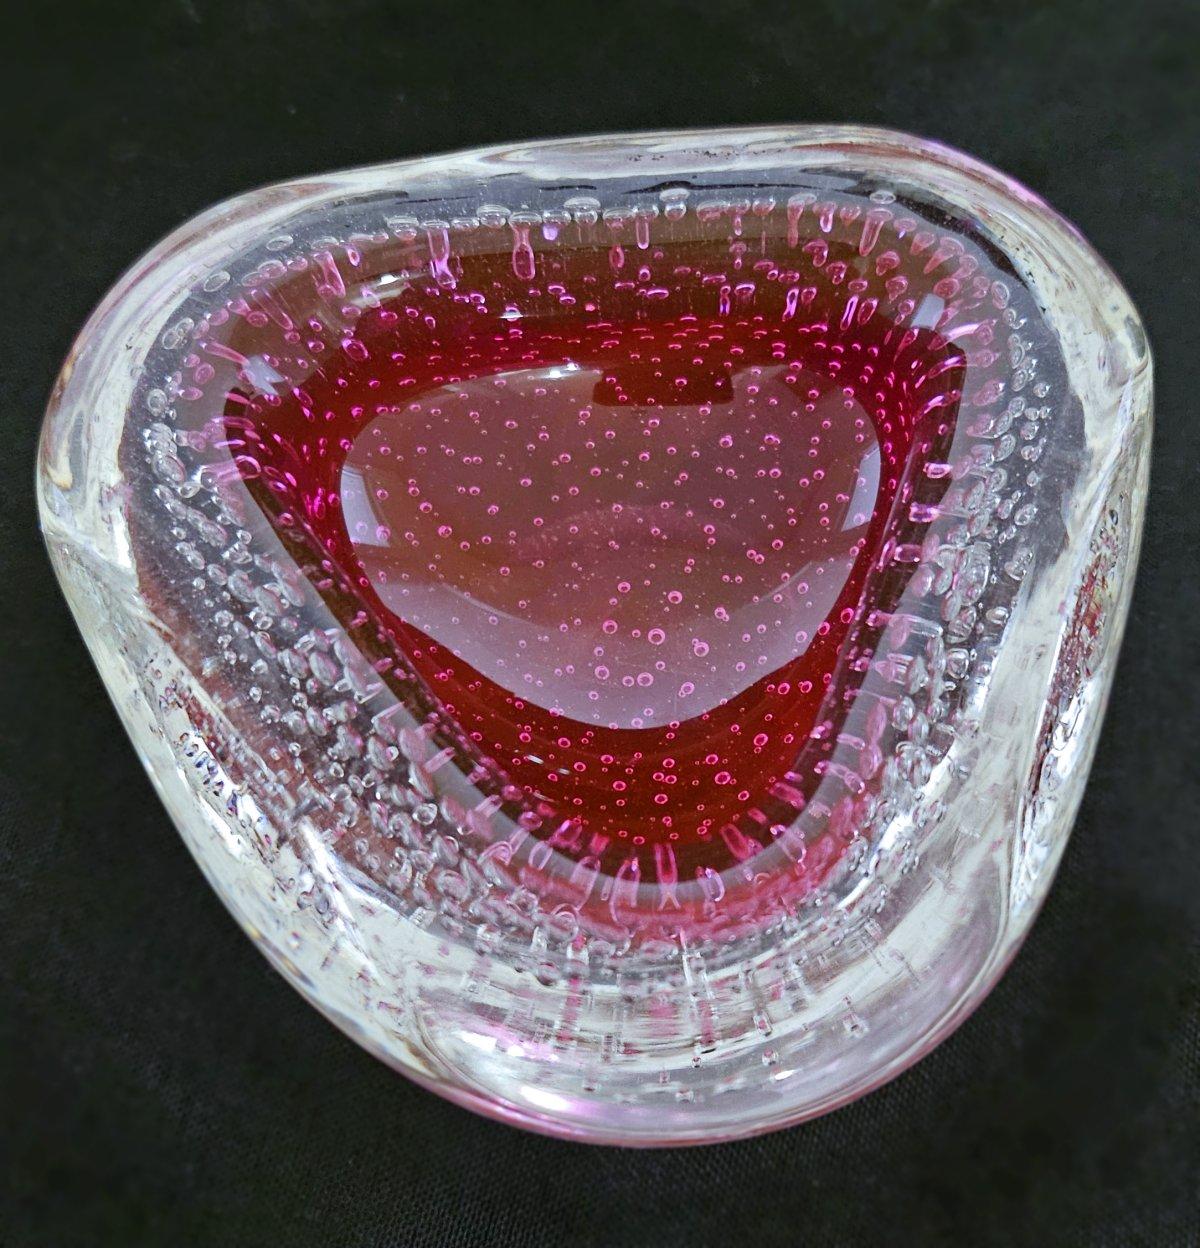 Vintage Murano Glas Geode Schale mit Bullicante, von Archimede Seguso
ca. 4 x 1,75 Zoll.
Sehr schöner Vintage-Zustand. Wir haben keine Chips oder Risse gefunden. 
Sehen Sie sich das Video an, um die Klarheit besser zu verstehen. 

Die Maße sind